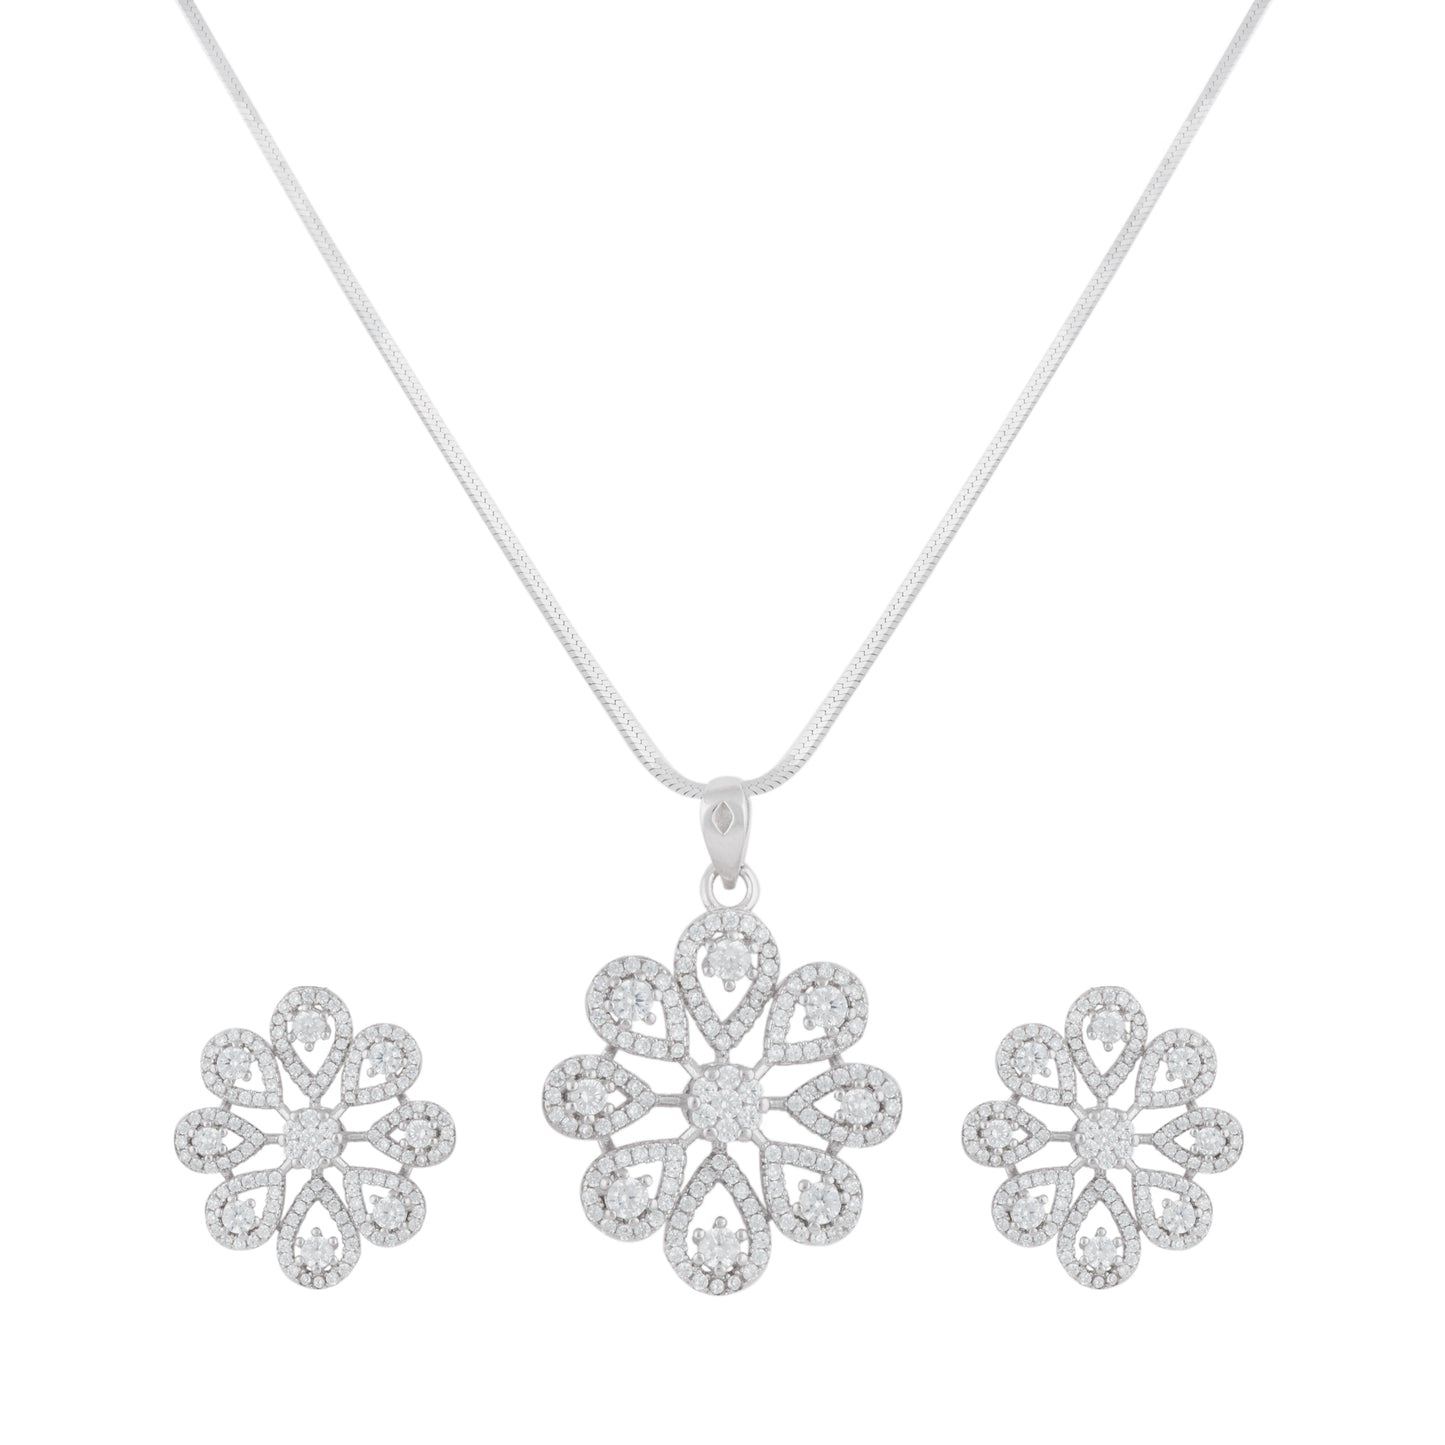 Silver Zircon Snowflake Necklace Set